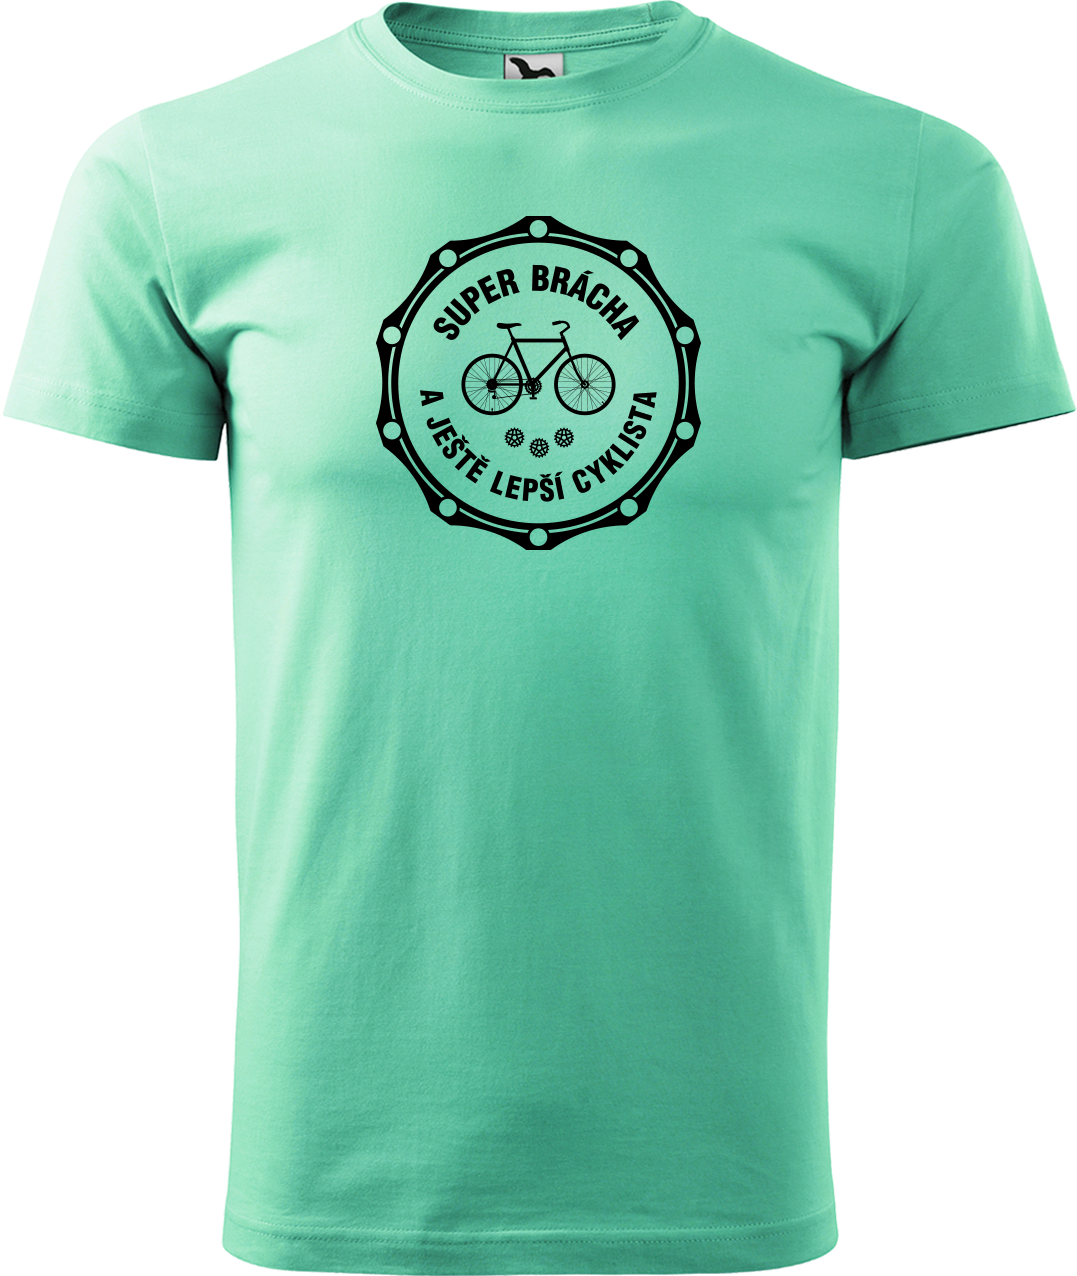 Pánské tričko pro cyklistu - Super brácha a ještě lepší cyklista Velikost: S, Barva: Mátová (95)